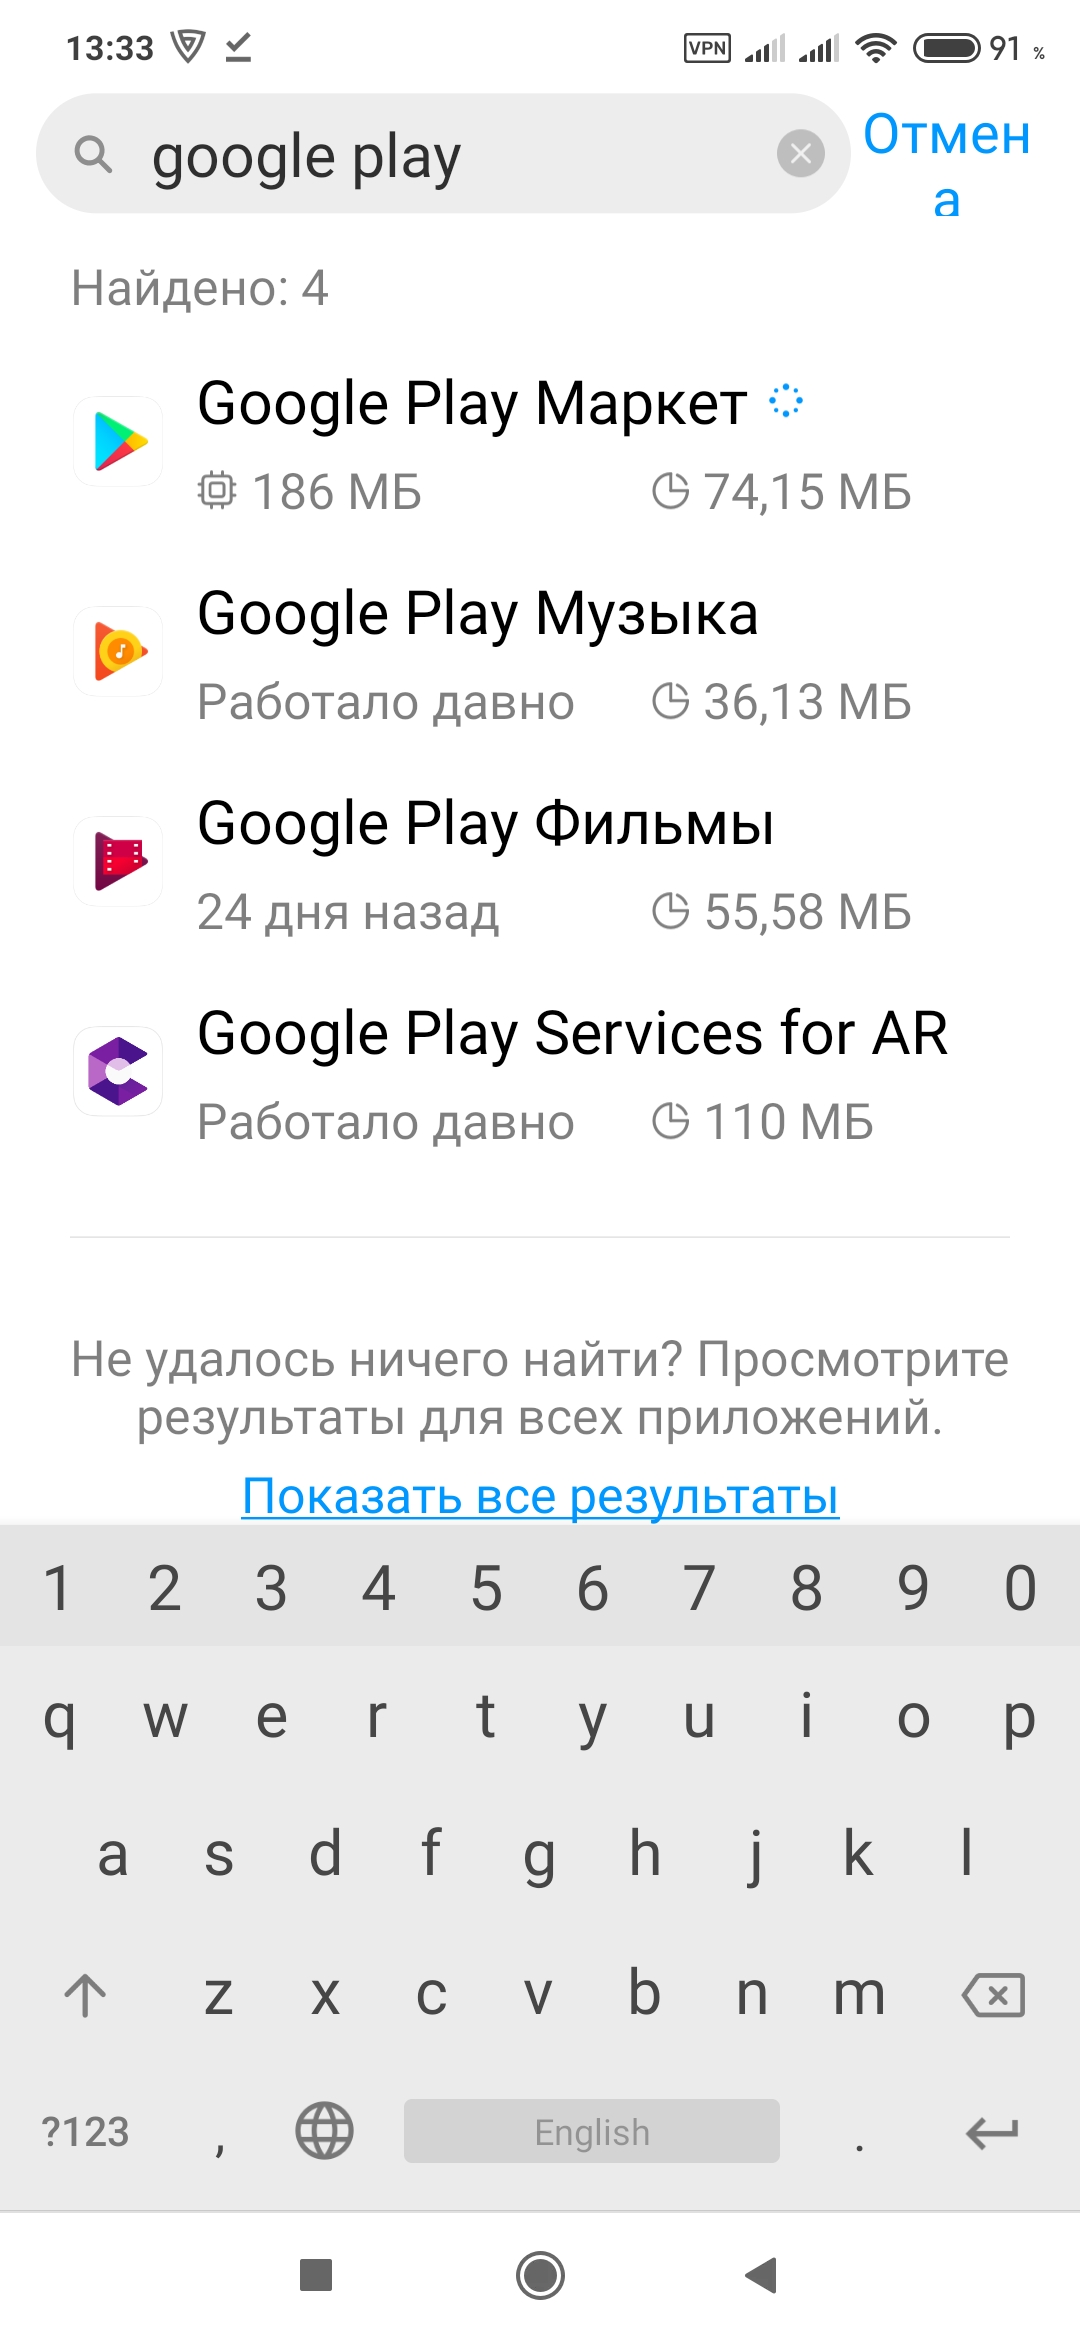 Как решить проблемы со скачиванием приложений (основные способы) - Cправка - Google Play